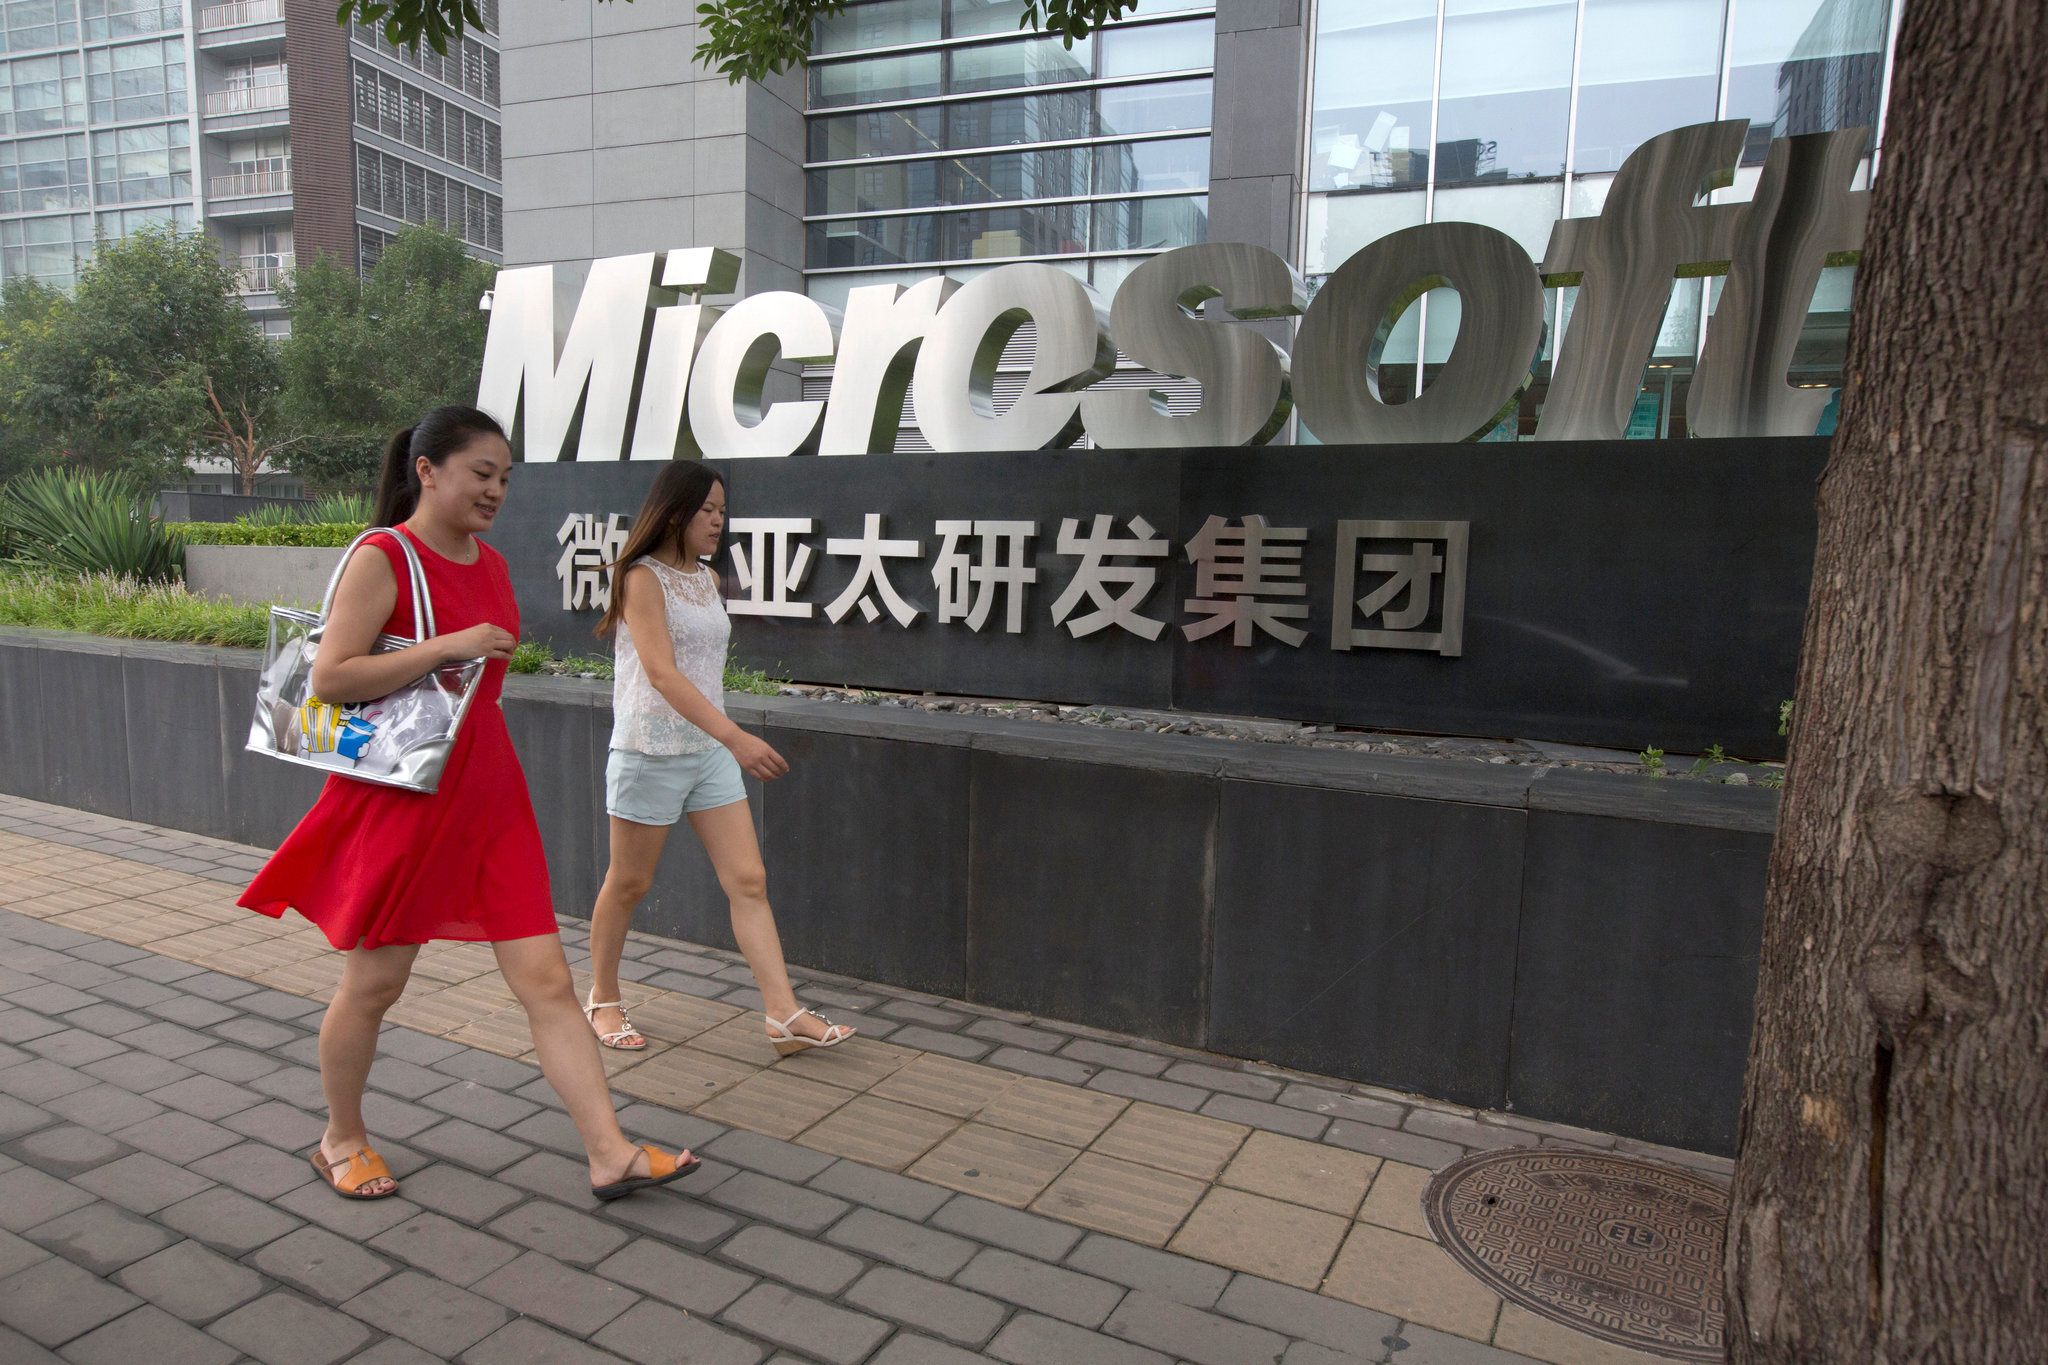 Microsoft serait prêt à transférer 800 travailleurs de l’IA de Chine vers les États-Unis, l’Irlande ou l’Australie